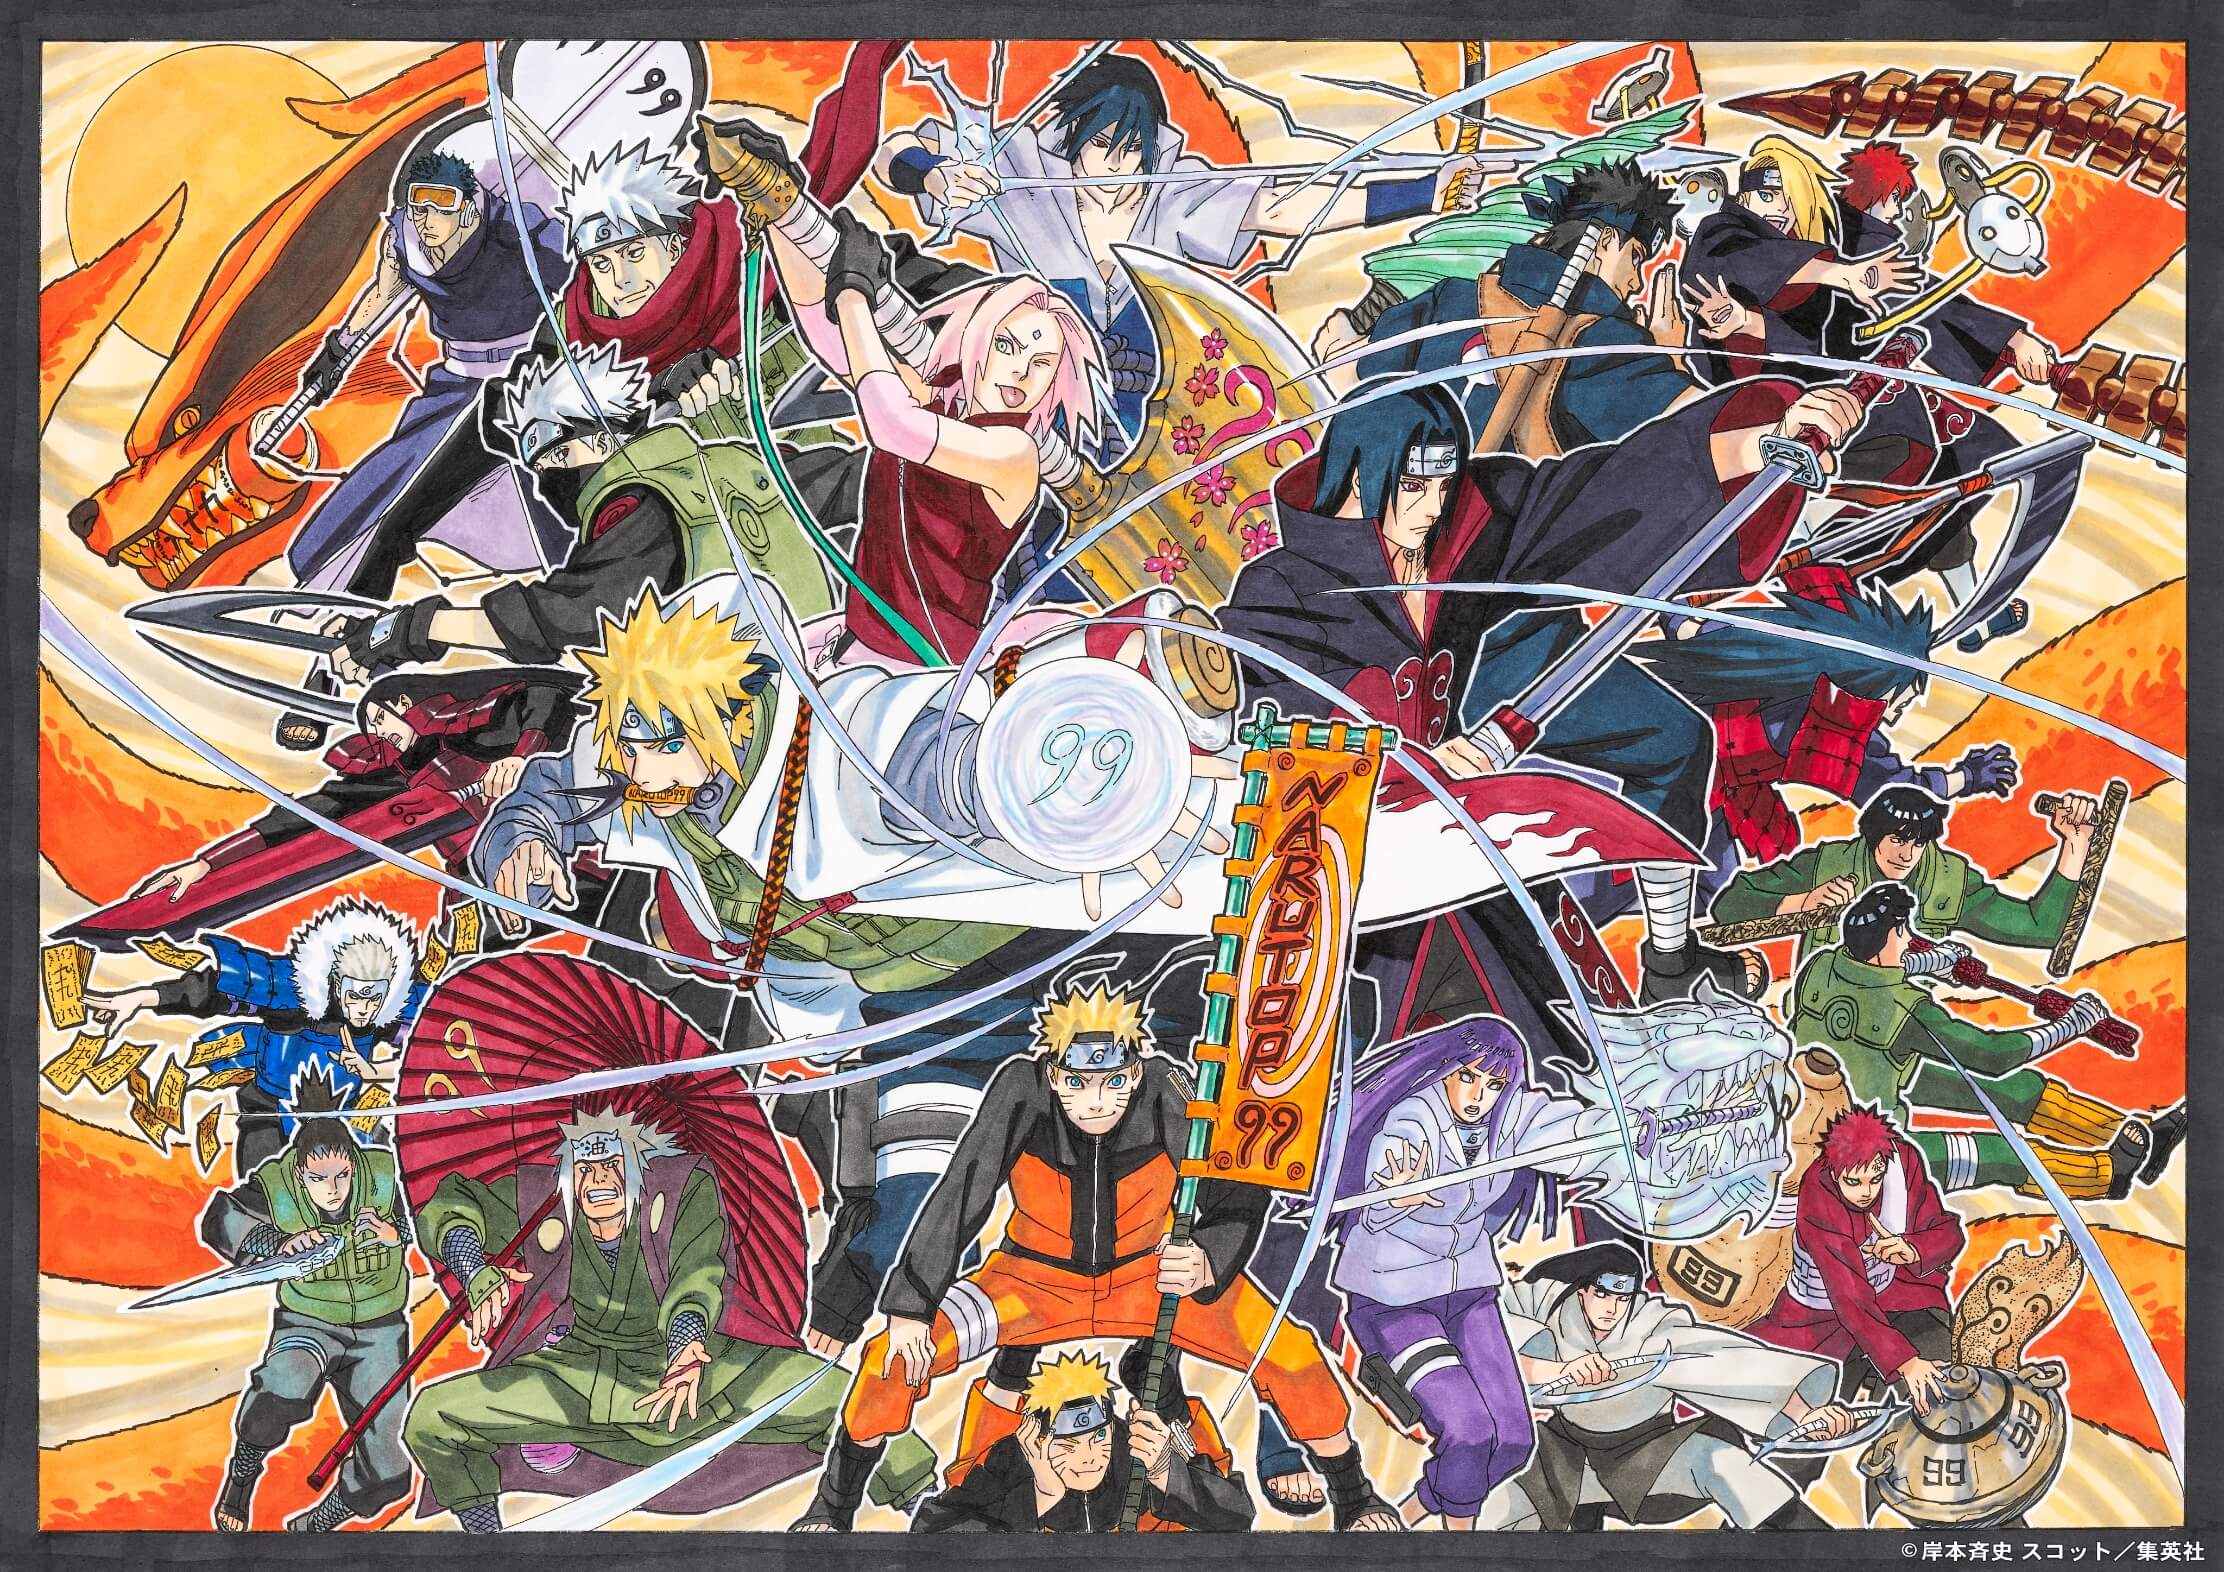 Os 99 personagens mais populares de Naruto são definidos por